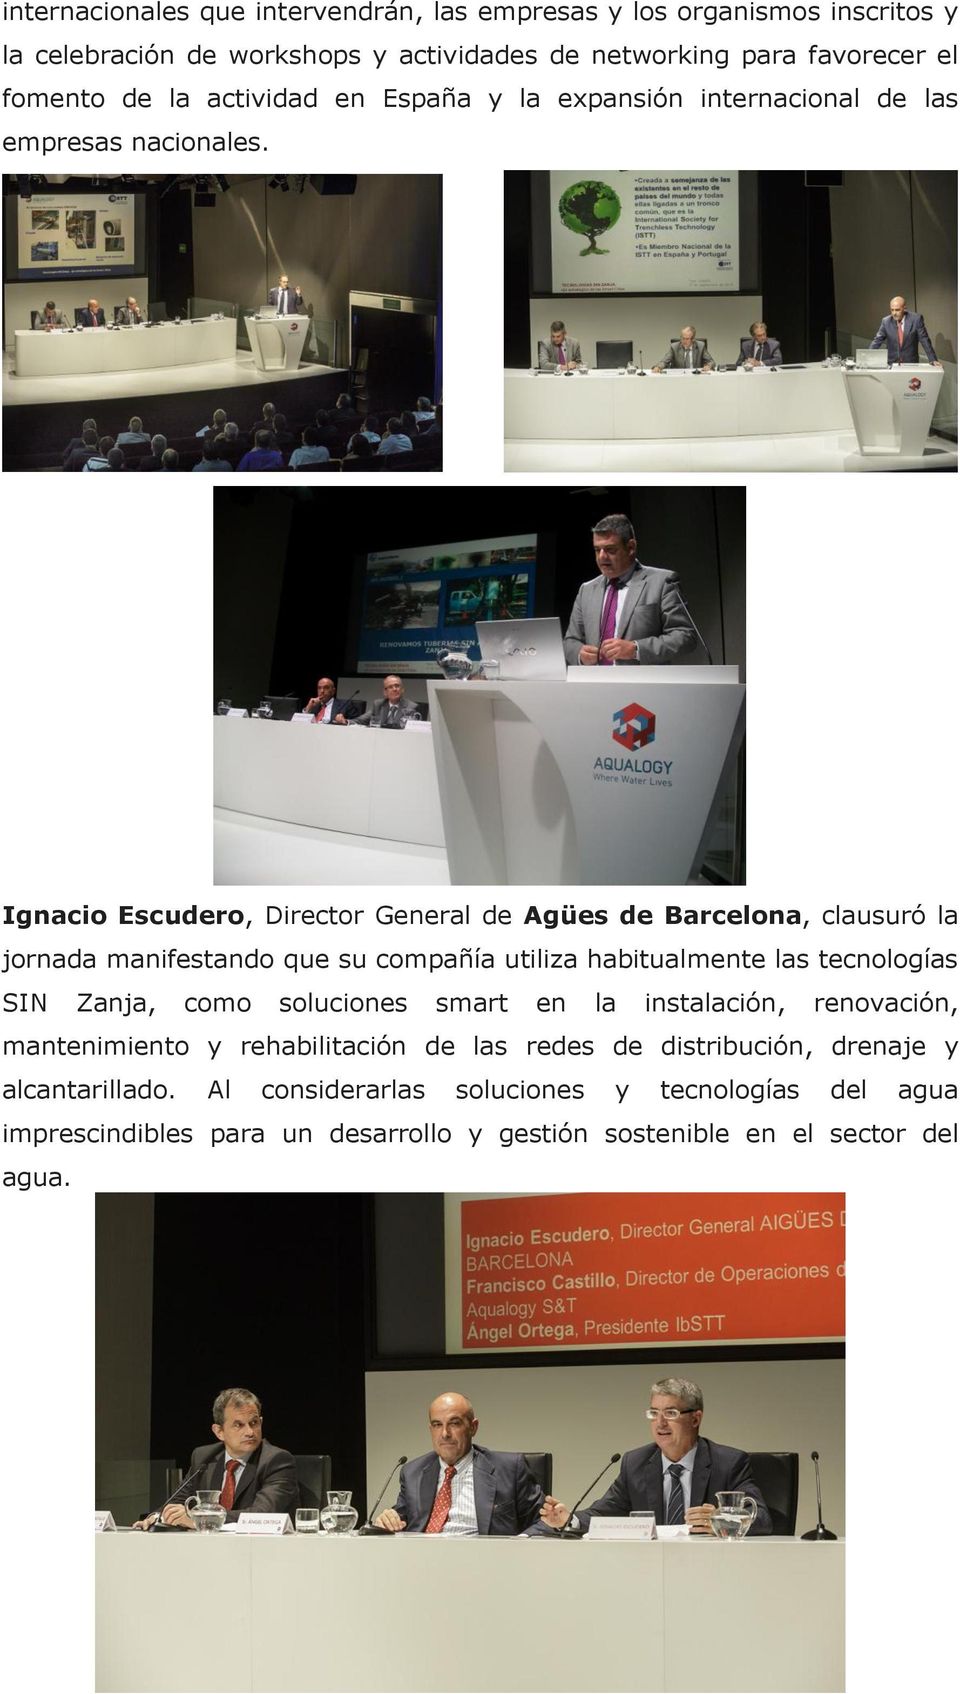 Ignacio Escudero, Director General de Agües de Barcelona, clausuró la jornada manifestando que su compañía utiliza habitualmente las tecnologías SIN Zanja, como